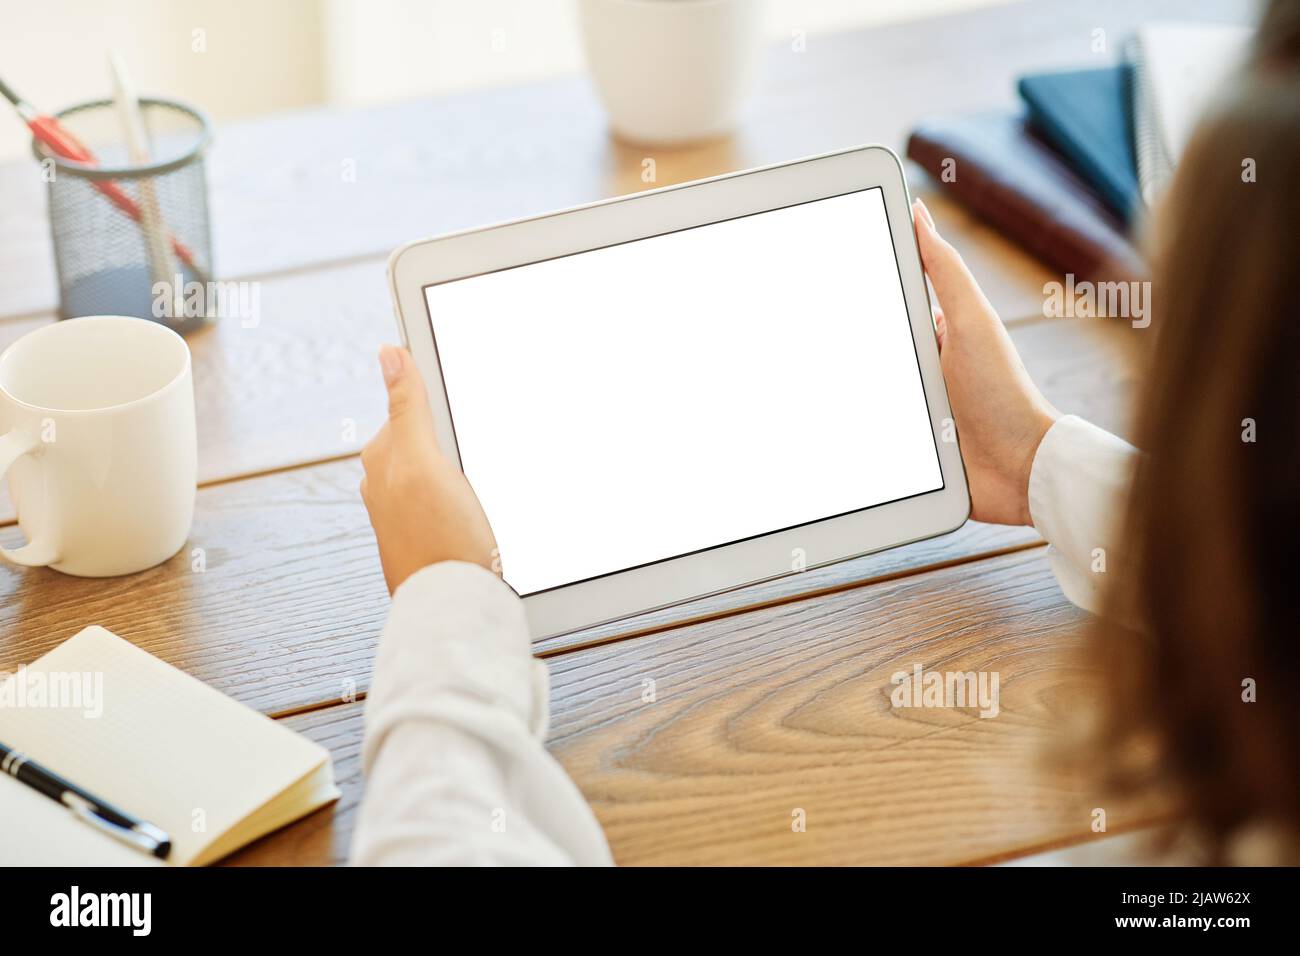 tecnología de mano tablet ordenador empresa comunicación pantalla digital internet mujer de la celebración Foto de stock